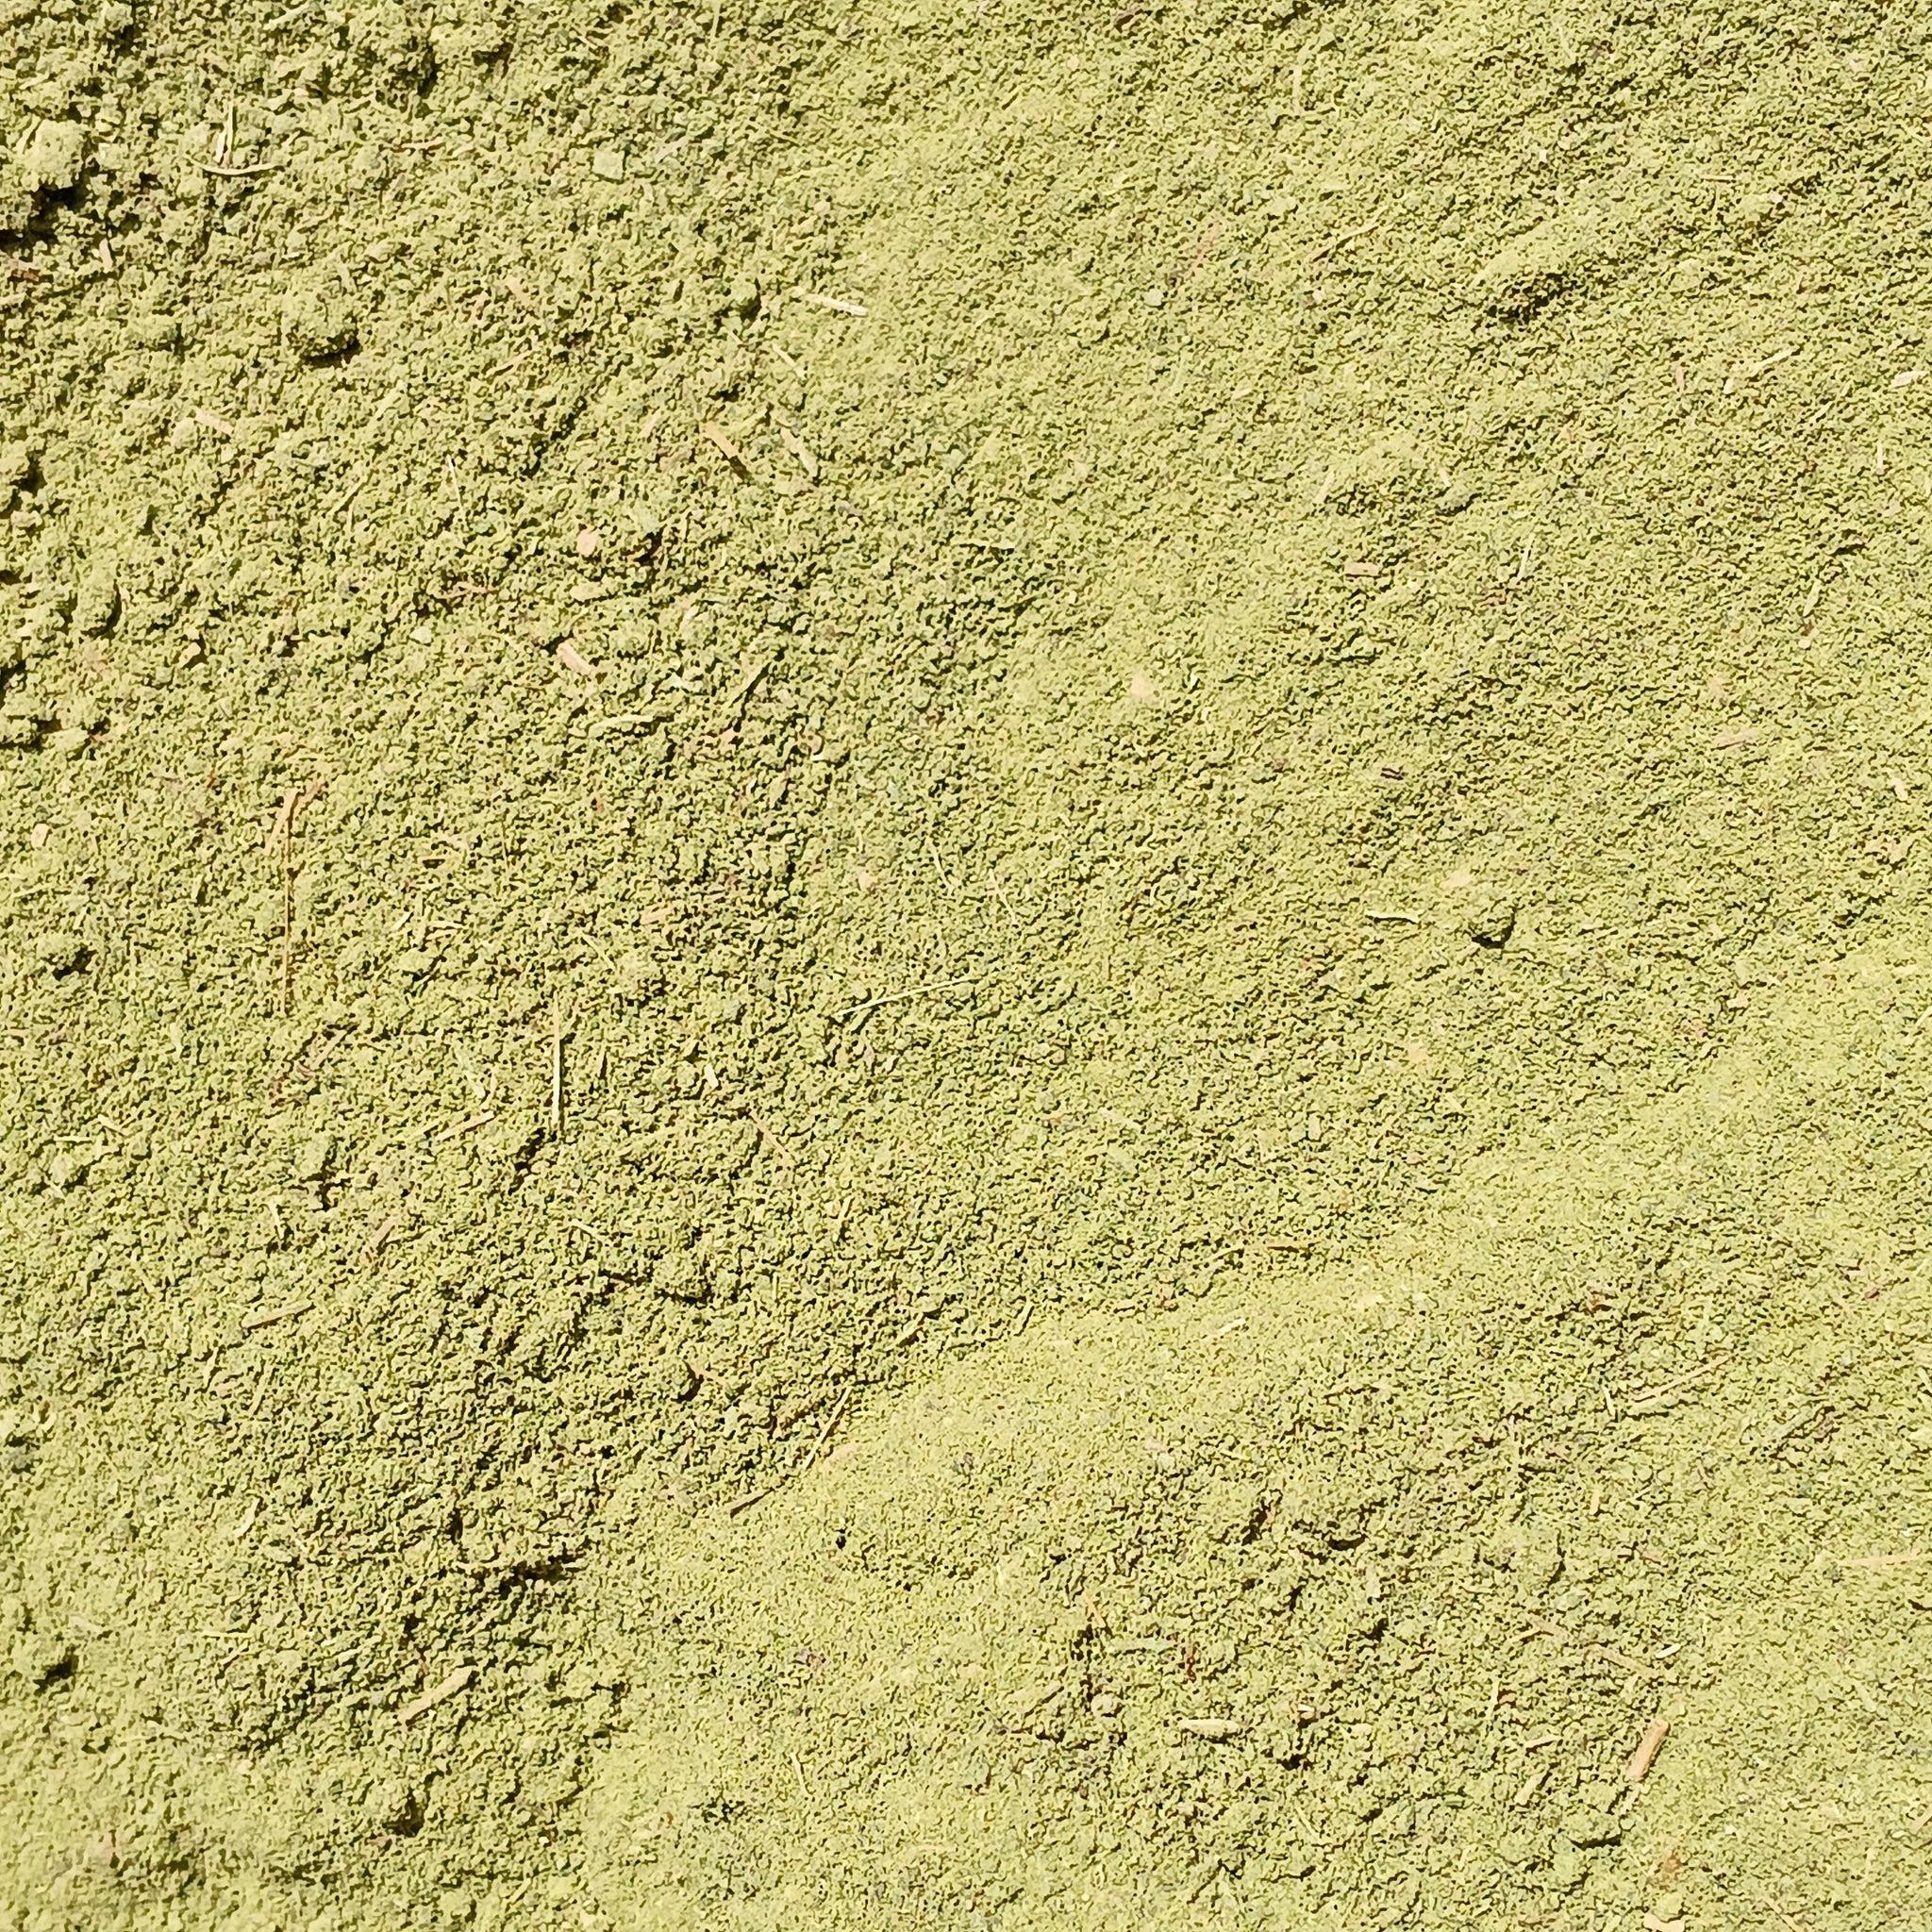 Stevia Leaf Powder  - Organic